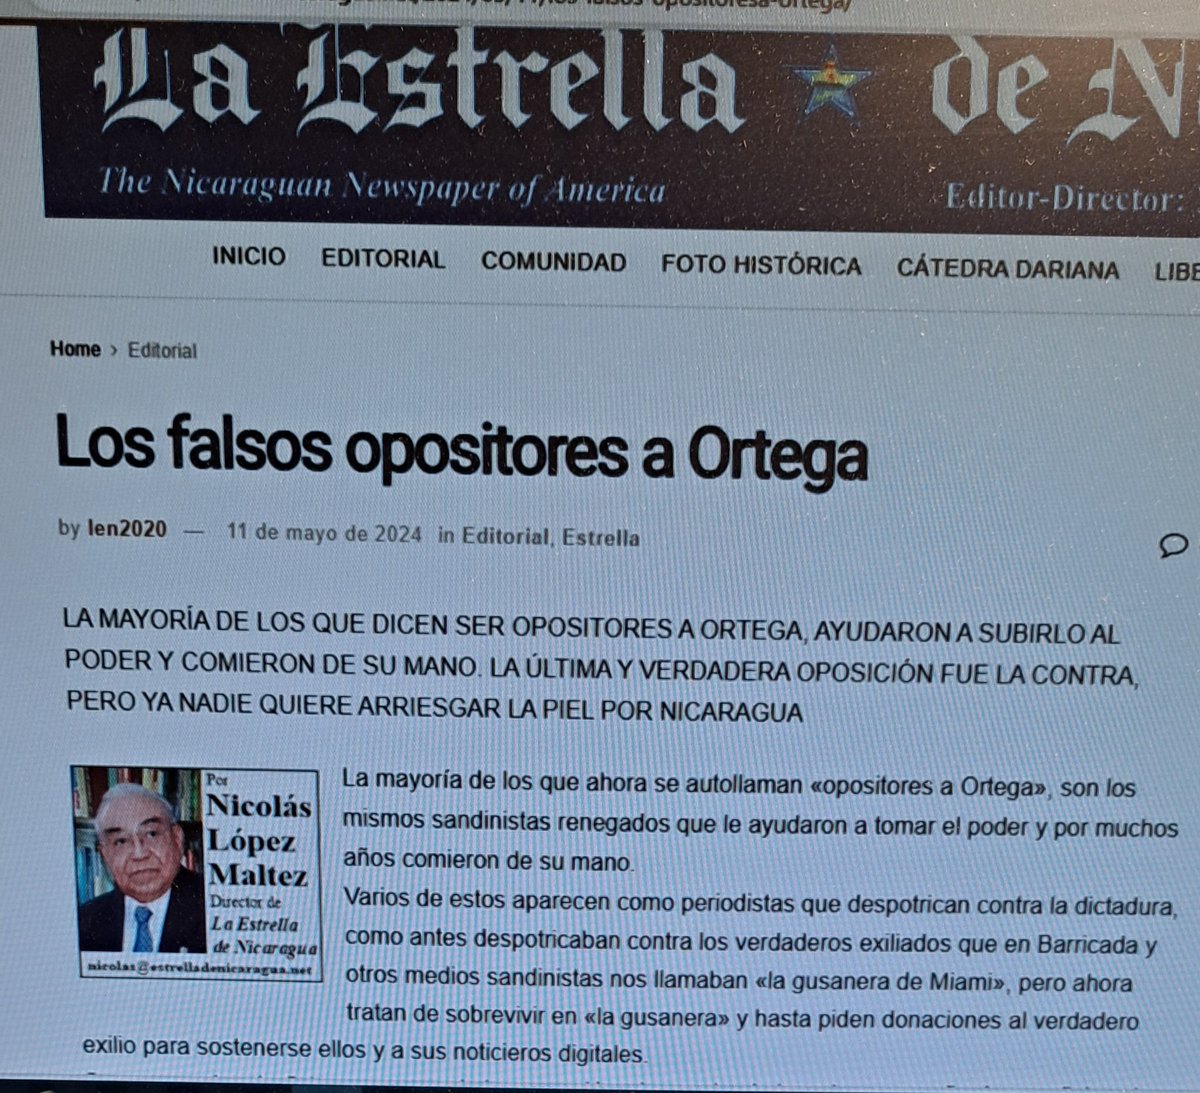 LOS FALSOS OPOSITORES AL DESNUDO. Nicolas López en la Estrella de Nicaragua, habla claro. Todos estos MRS y periodistas propagandistas 'son los mismos sandinistas renegados' que comian de Ortega y con Ortega. Estos vividores ahora tratan de 'sobrevivir' en la gusanera'